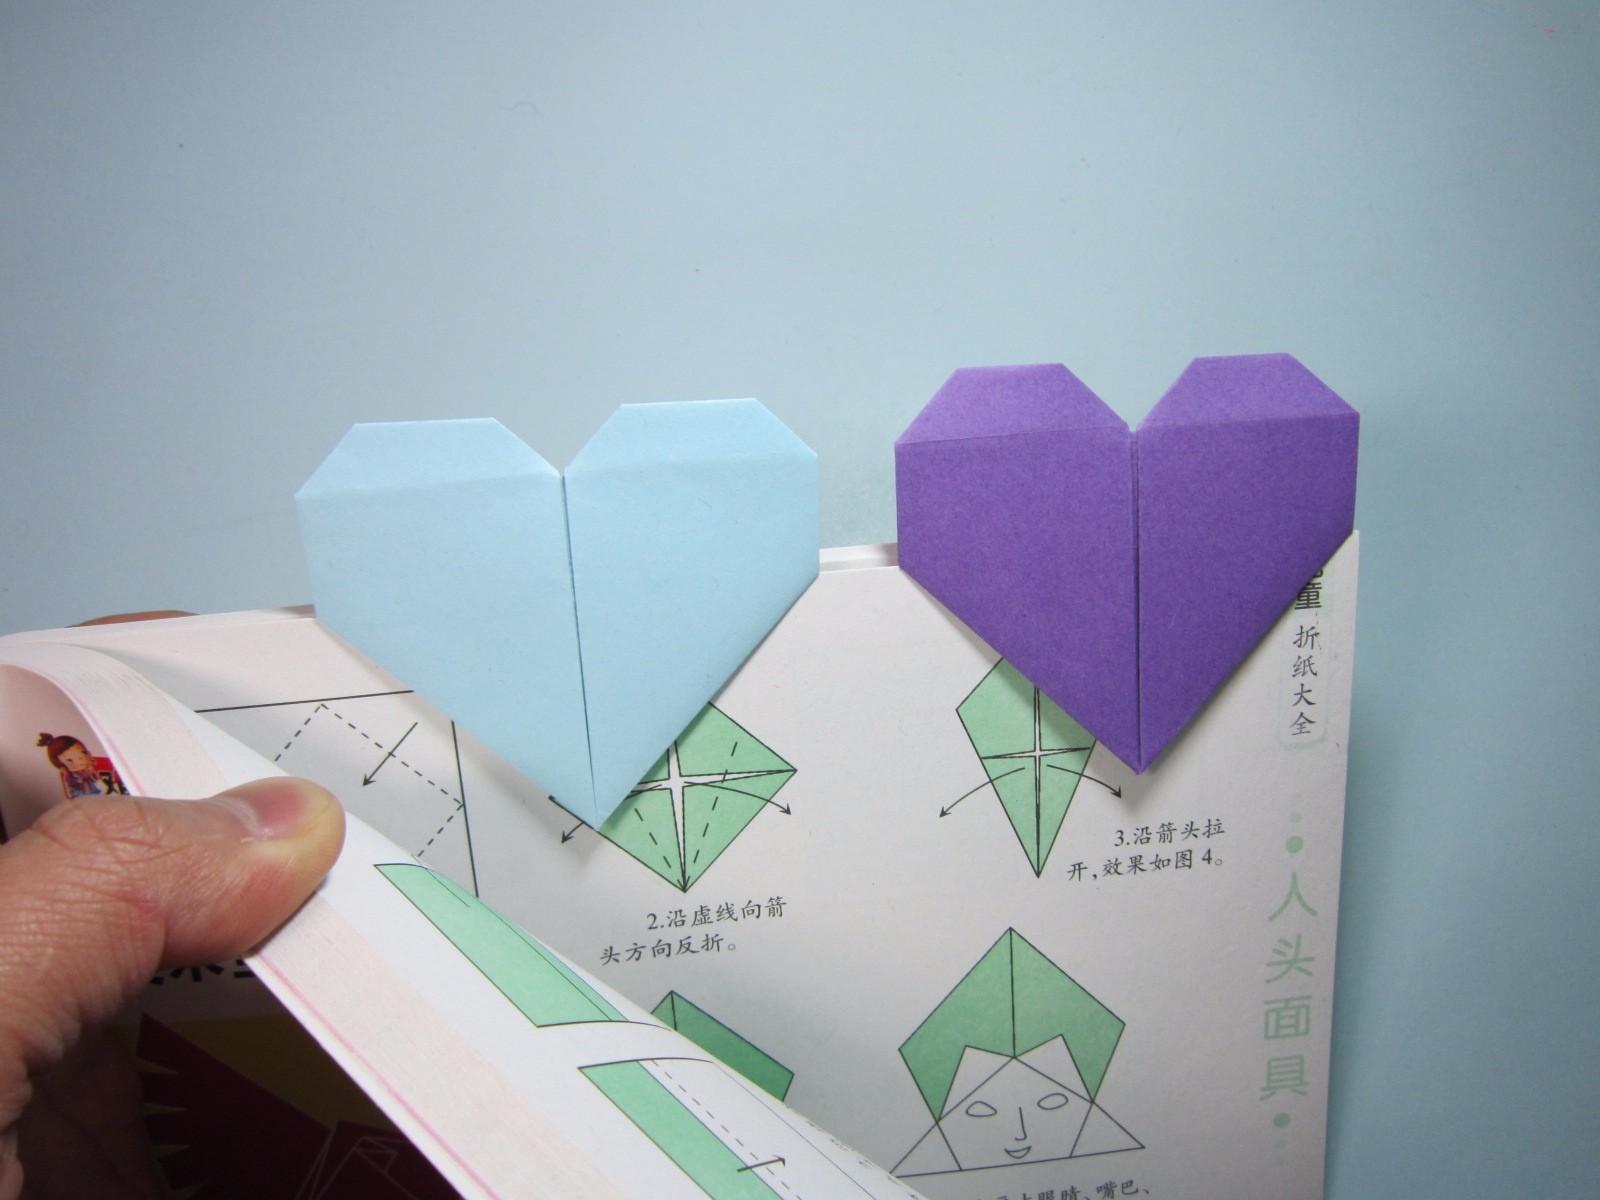 手工折纸爱心书签 心形书签的折法详细图解教程